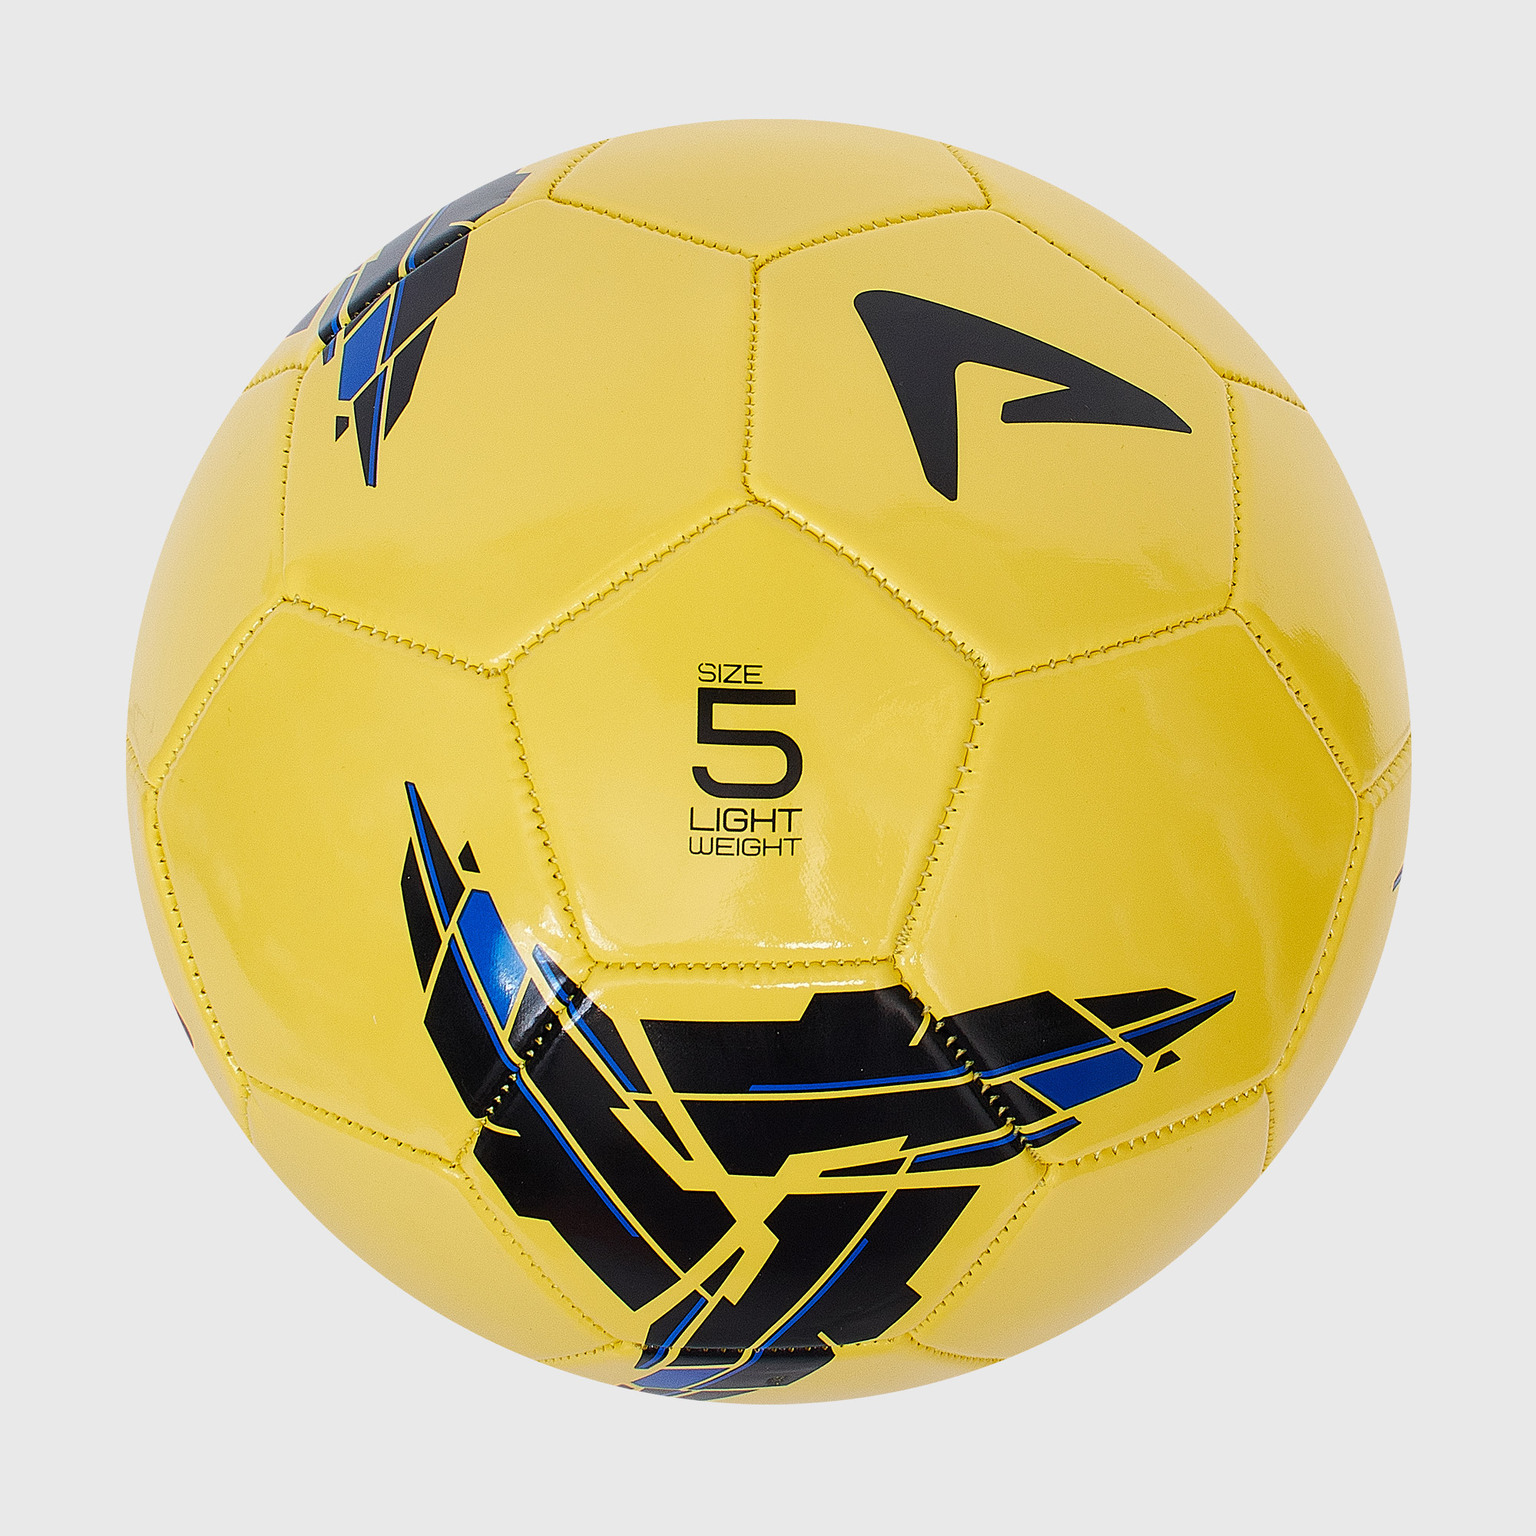 Футбольный мяч Demix 114500-MX